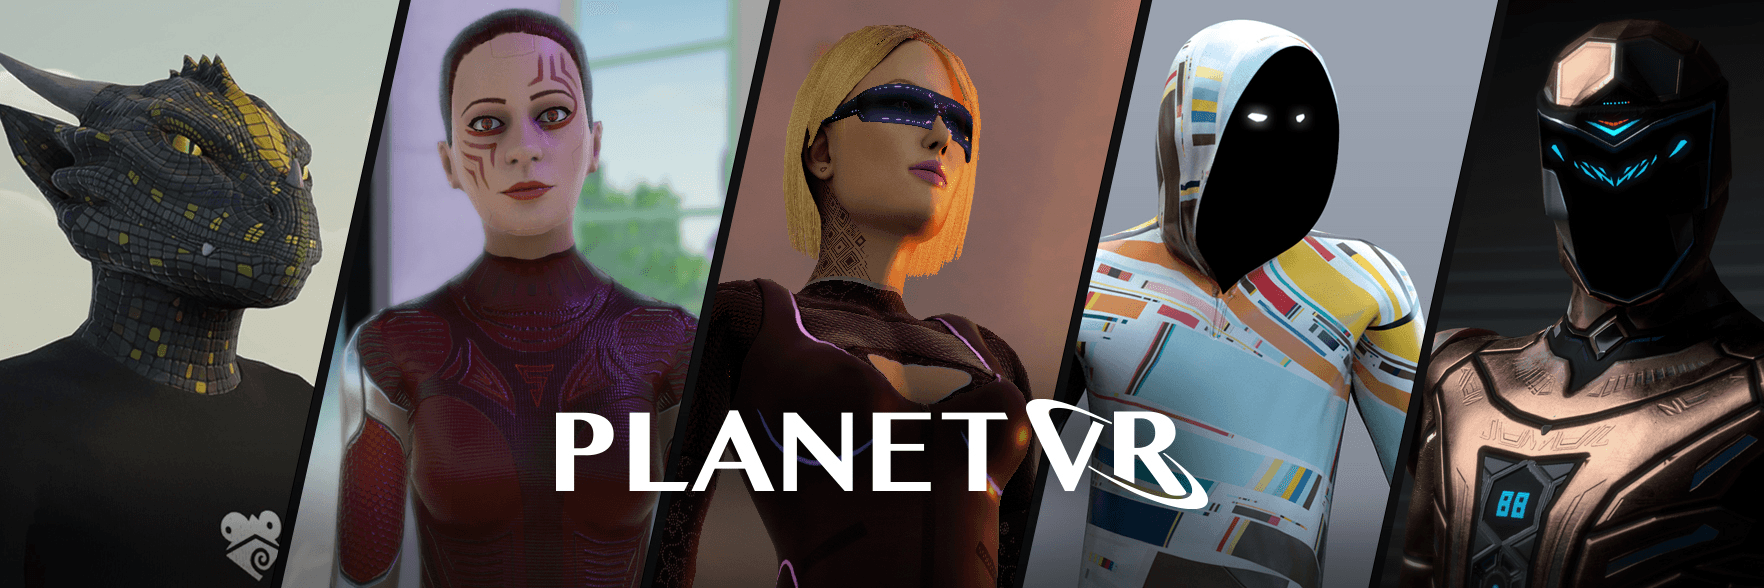 Planet-VR 橫幅